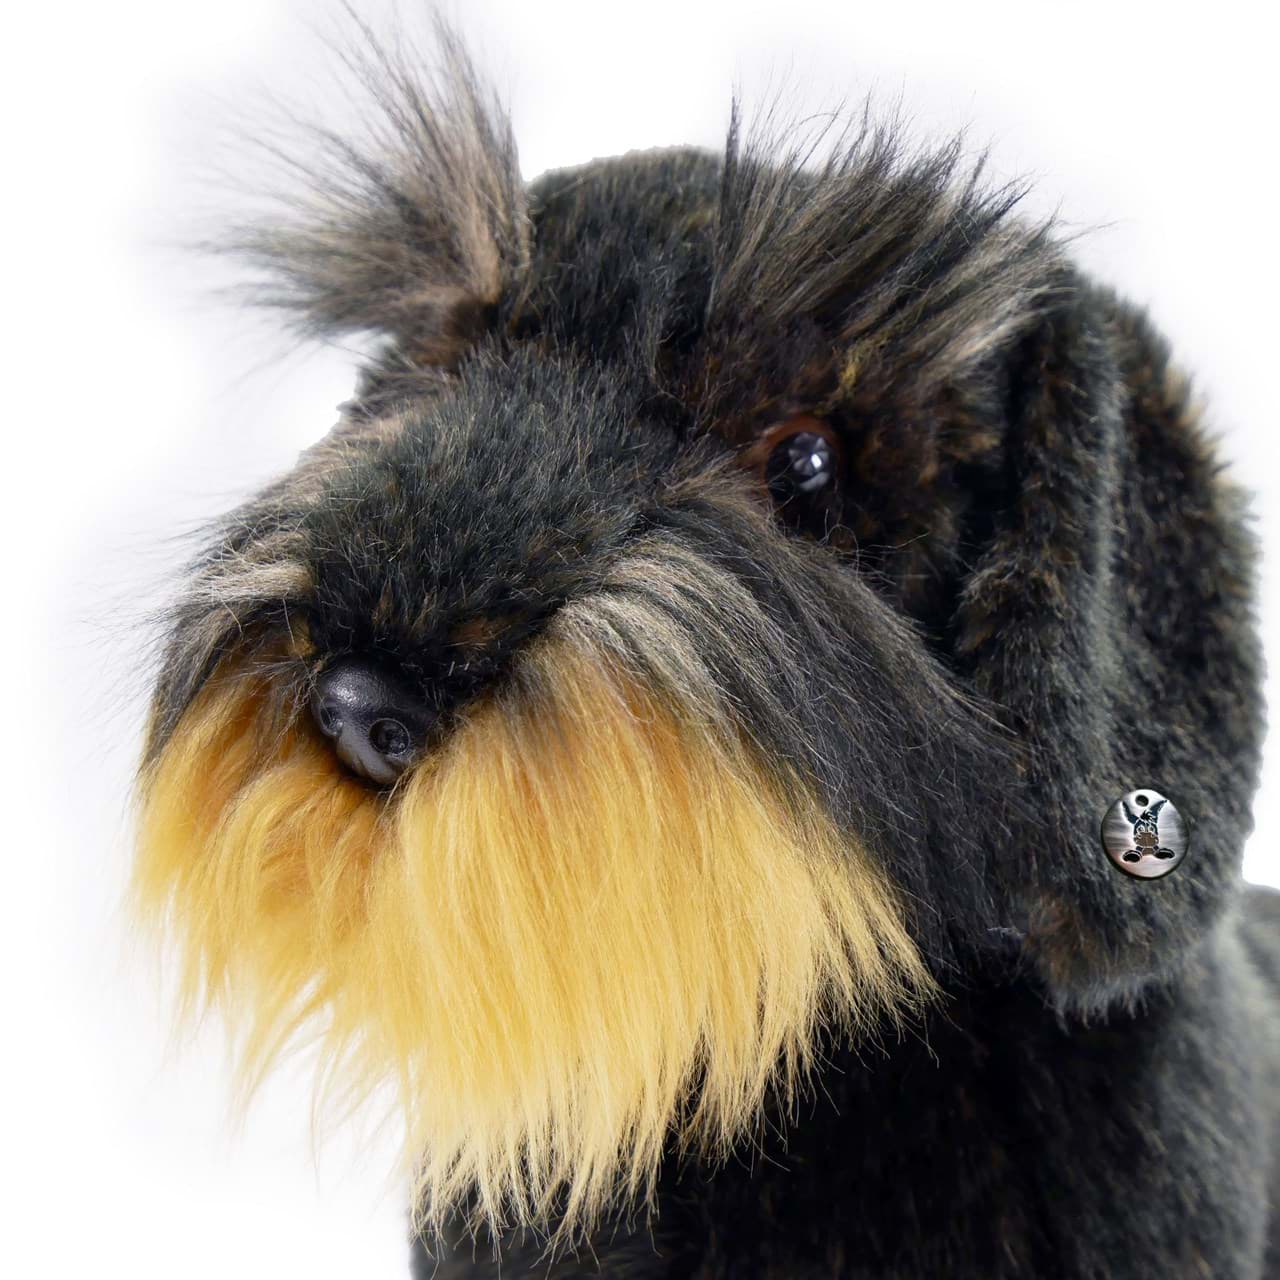 Dackel Kuscheltier Hund sitzend 32 cm Plüsch Rauhaardackel WALDI